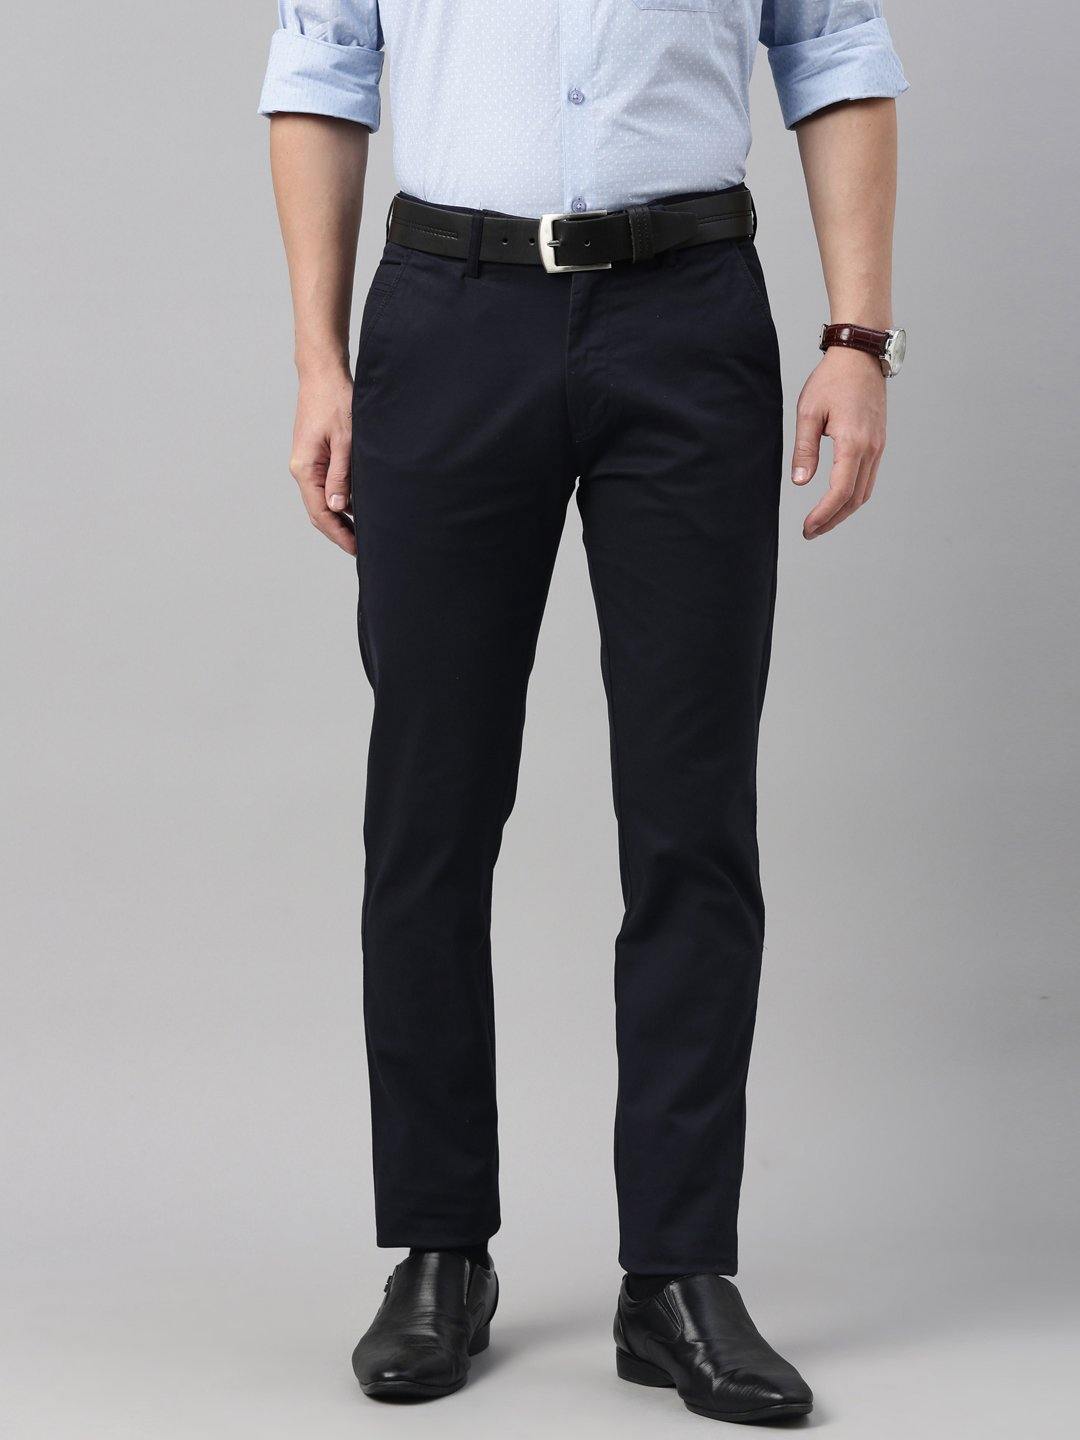 Buy Navy Blue Trousers  Pants for Women by Femella Online  Ajiocom